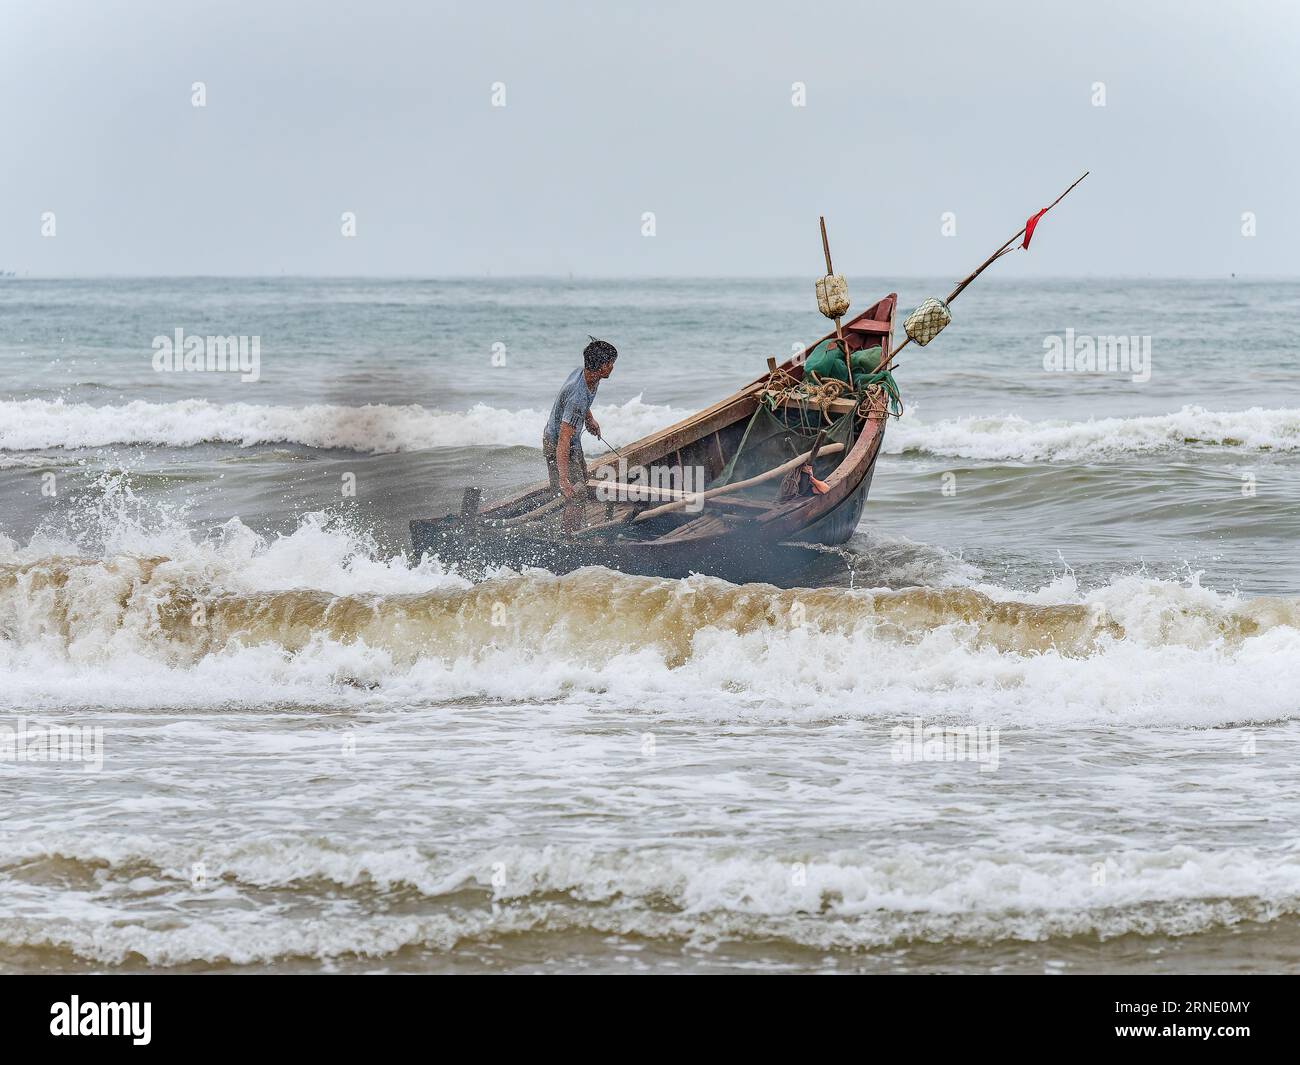 Pêcheur lançant son bateau contre le vent et les hautes vagues à Sam son Beach, Thanh Hoa, Vietnam Banque D'Images